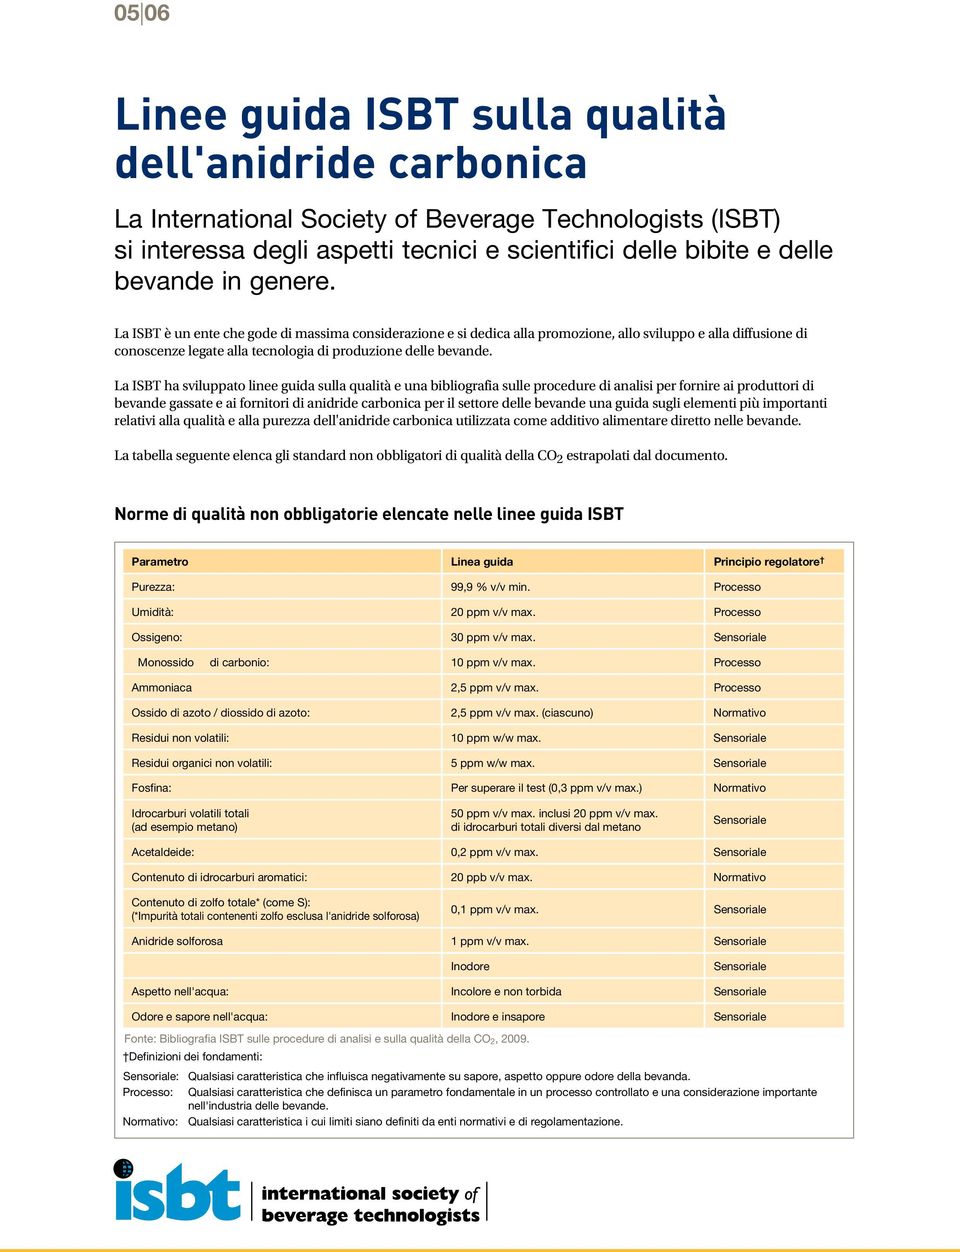 La ISBT ha sviluppato linee guida sulla qualità e una bibliografia sulle procedure di analisi per fornire ai produttori di bevande gassate e ai fornitori di anidride carbonica per il settore delle